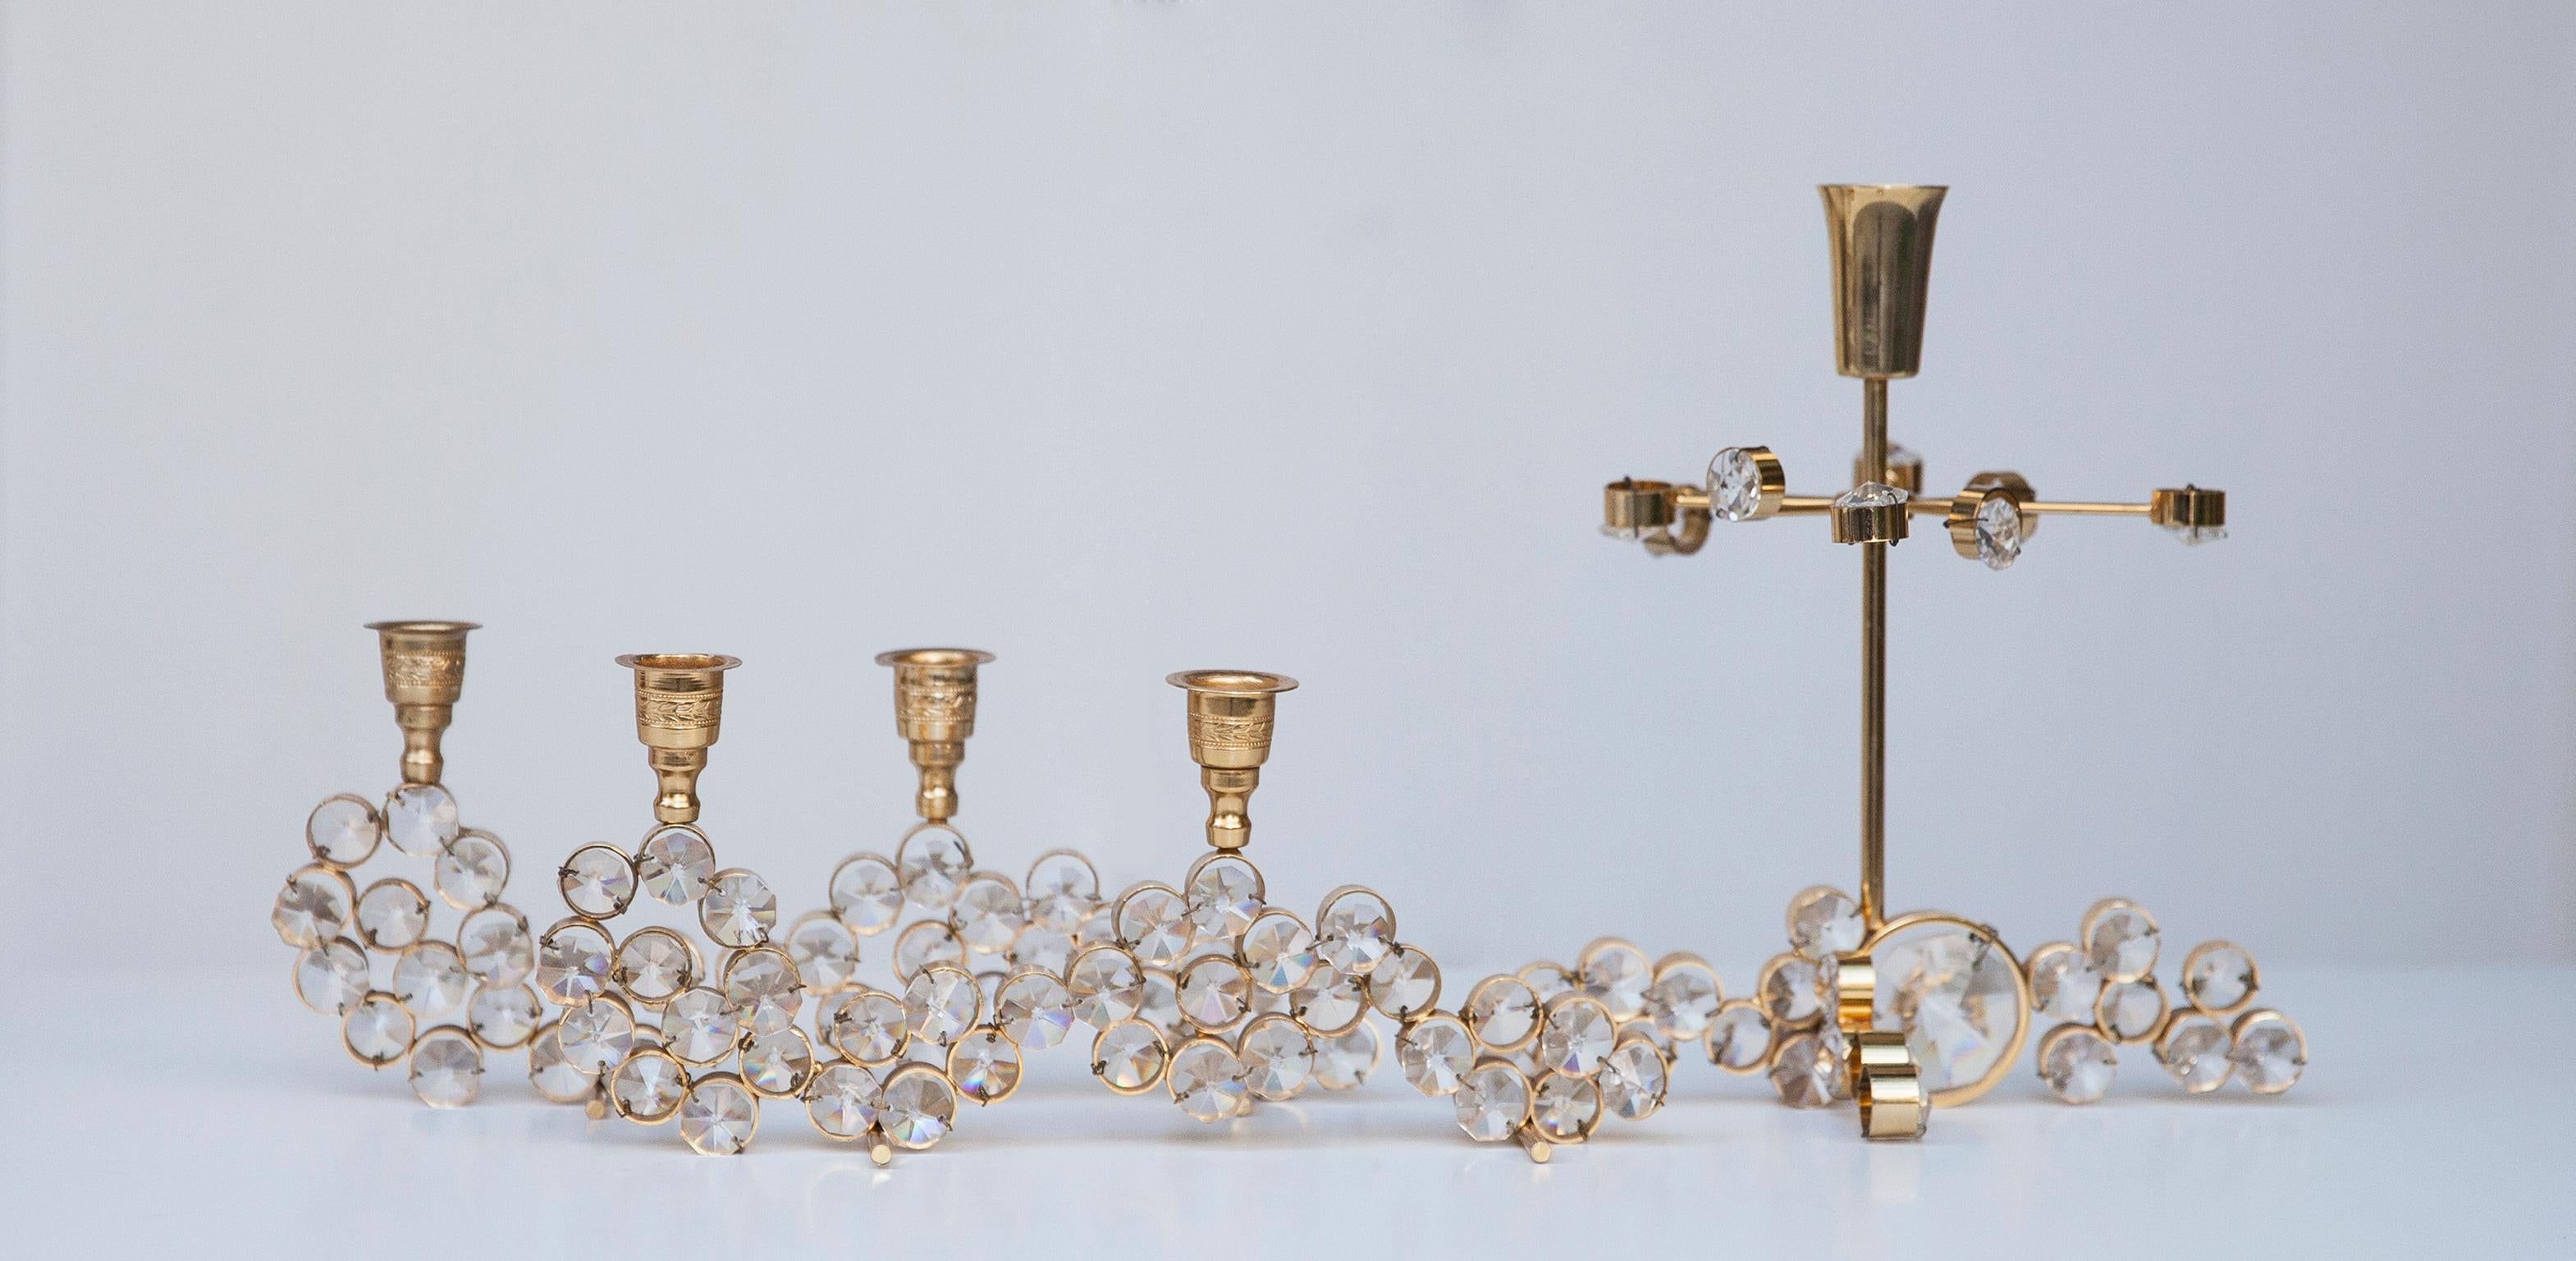 Fünf schöne Kerzenhalter im Hollywood Regency Stil, hergestellt in den 1970er Jahren von Palwa Deutschland. Aus vergoldetem Messing mit facettierten Kristallen in ausgezeichnetem Vintage-Zustand.

Maße: 23 H x 9 B x 5 T cm

19 H x 18 B x 12 T